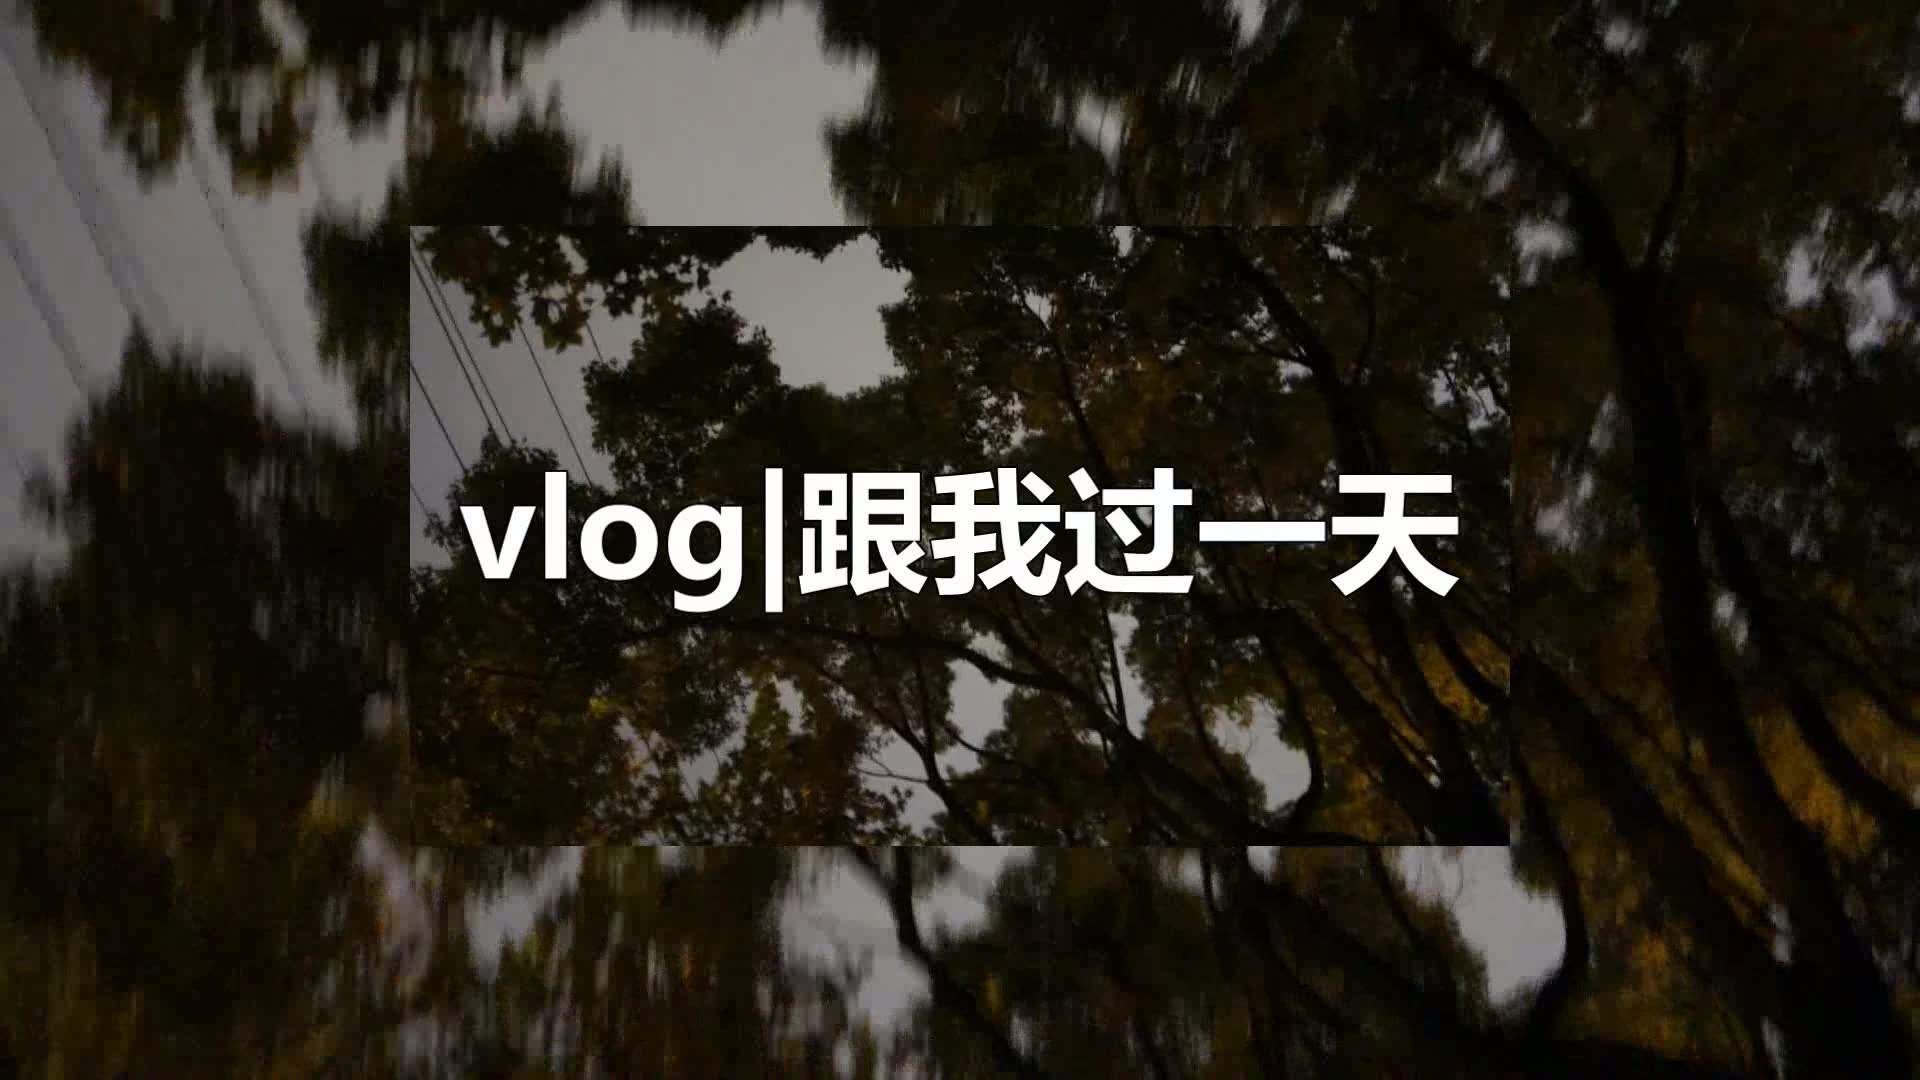 米可网络:优质的vlog能助力自媒体成长